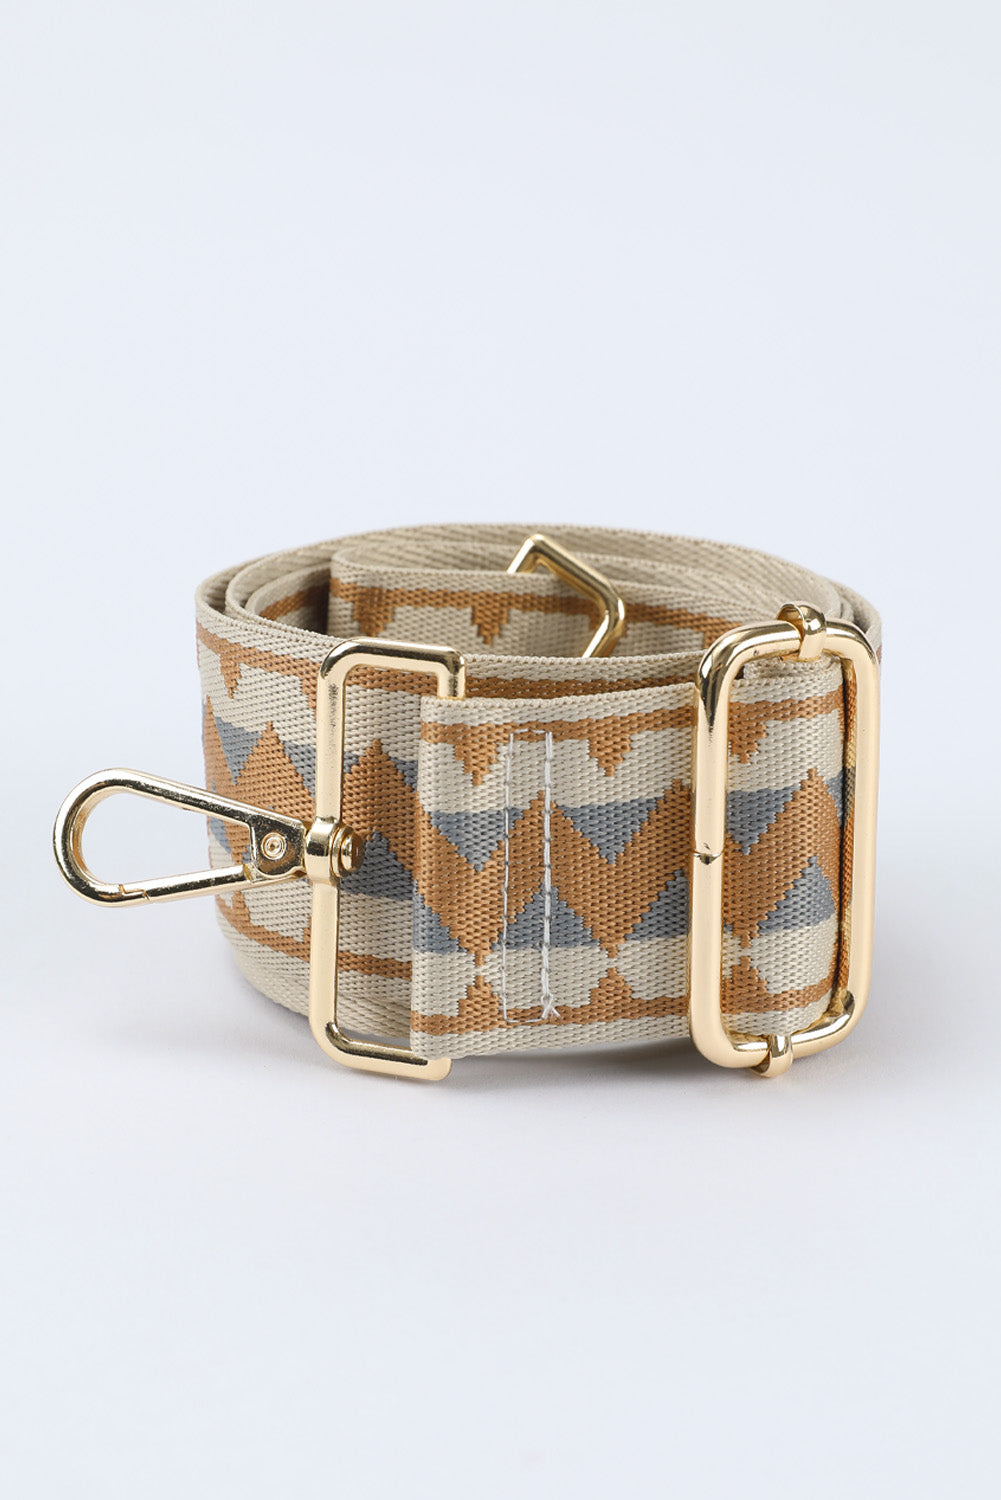 Adjustable Embroidered Handbag Belt